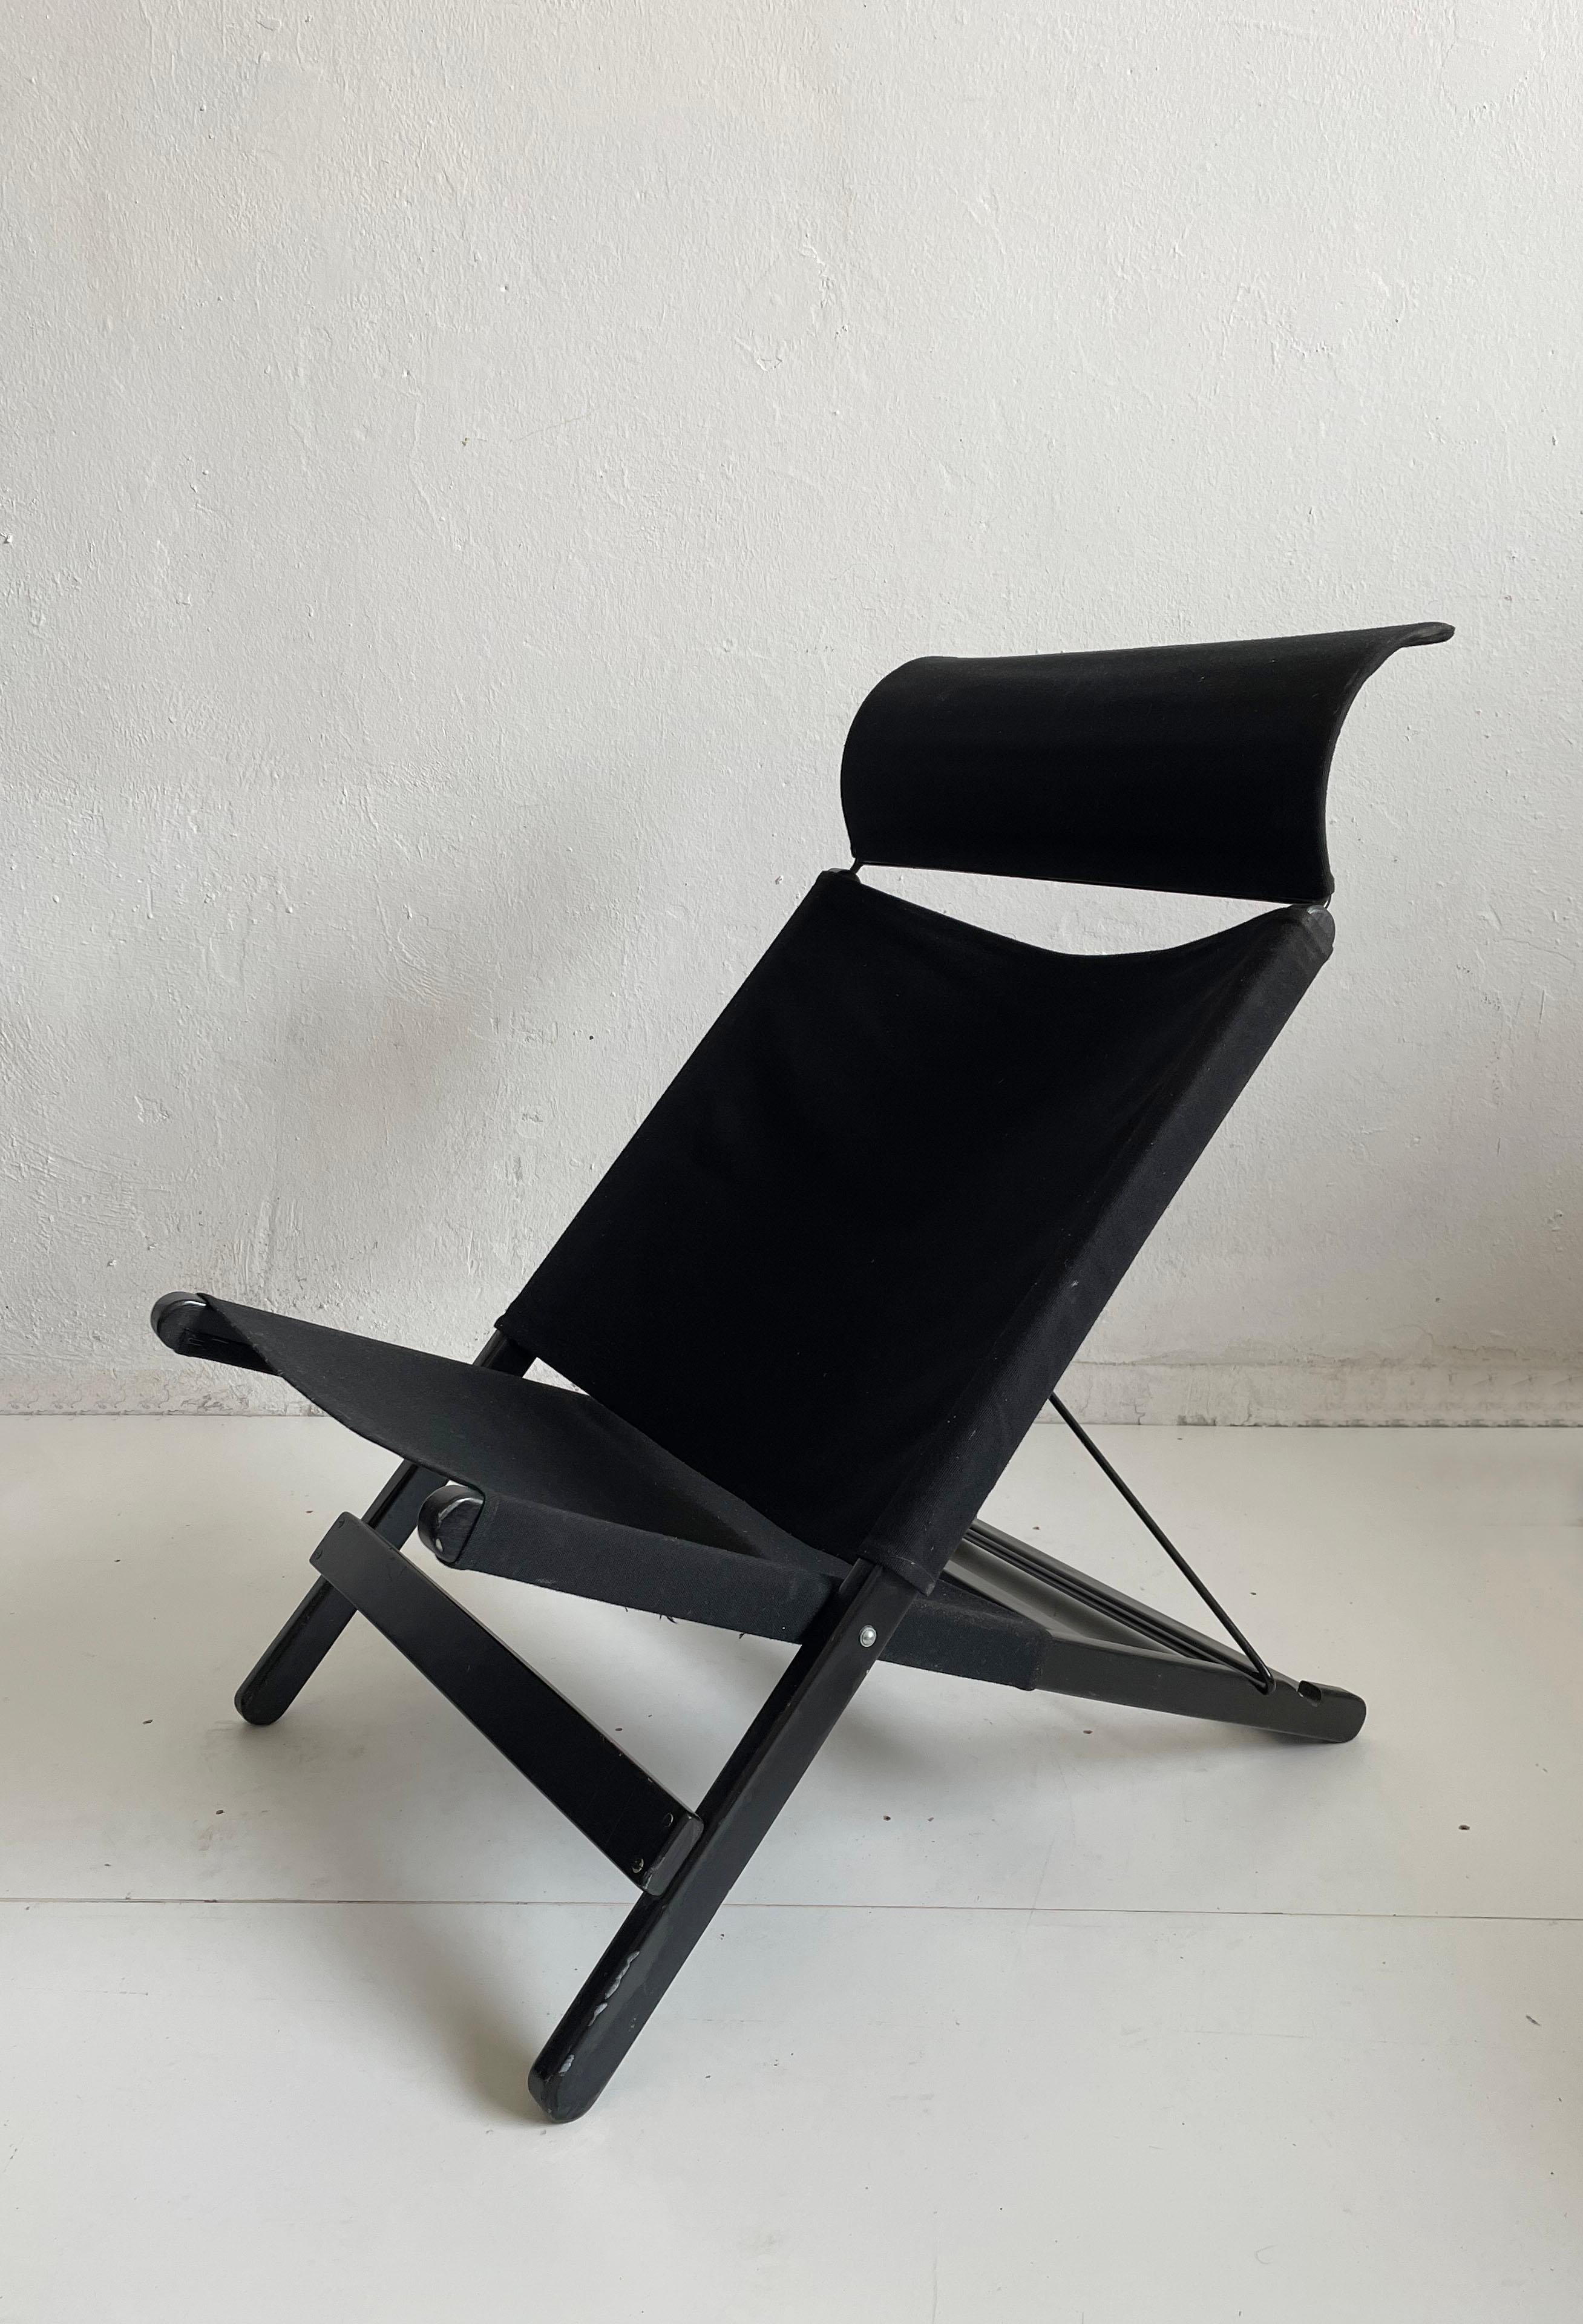 Chaise pliante vintage Hestra conçue par Tord Bjorklund pour Ikea et produite à la fin des années 1980, début des années 1990. 
La chaise est équipée d'un dossier réglable (2 positions) et d'un appui-tête amovible. Le cadre est en bois laqué noir